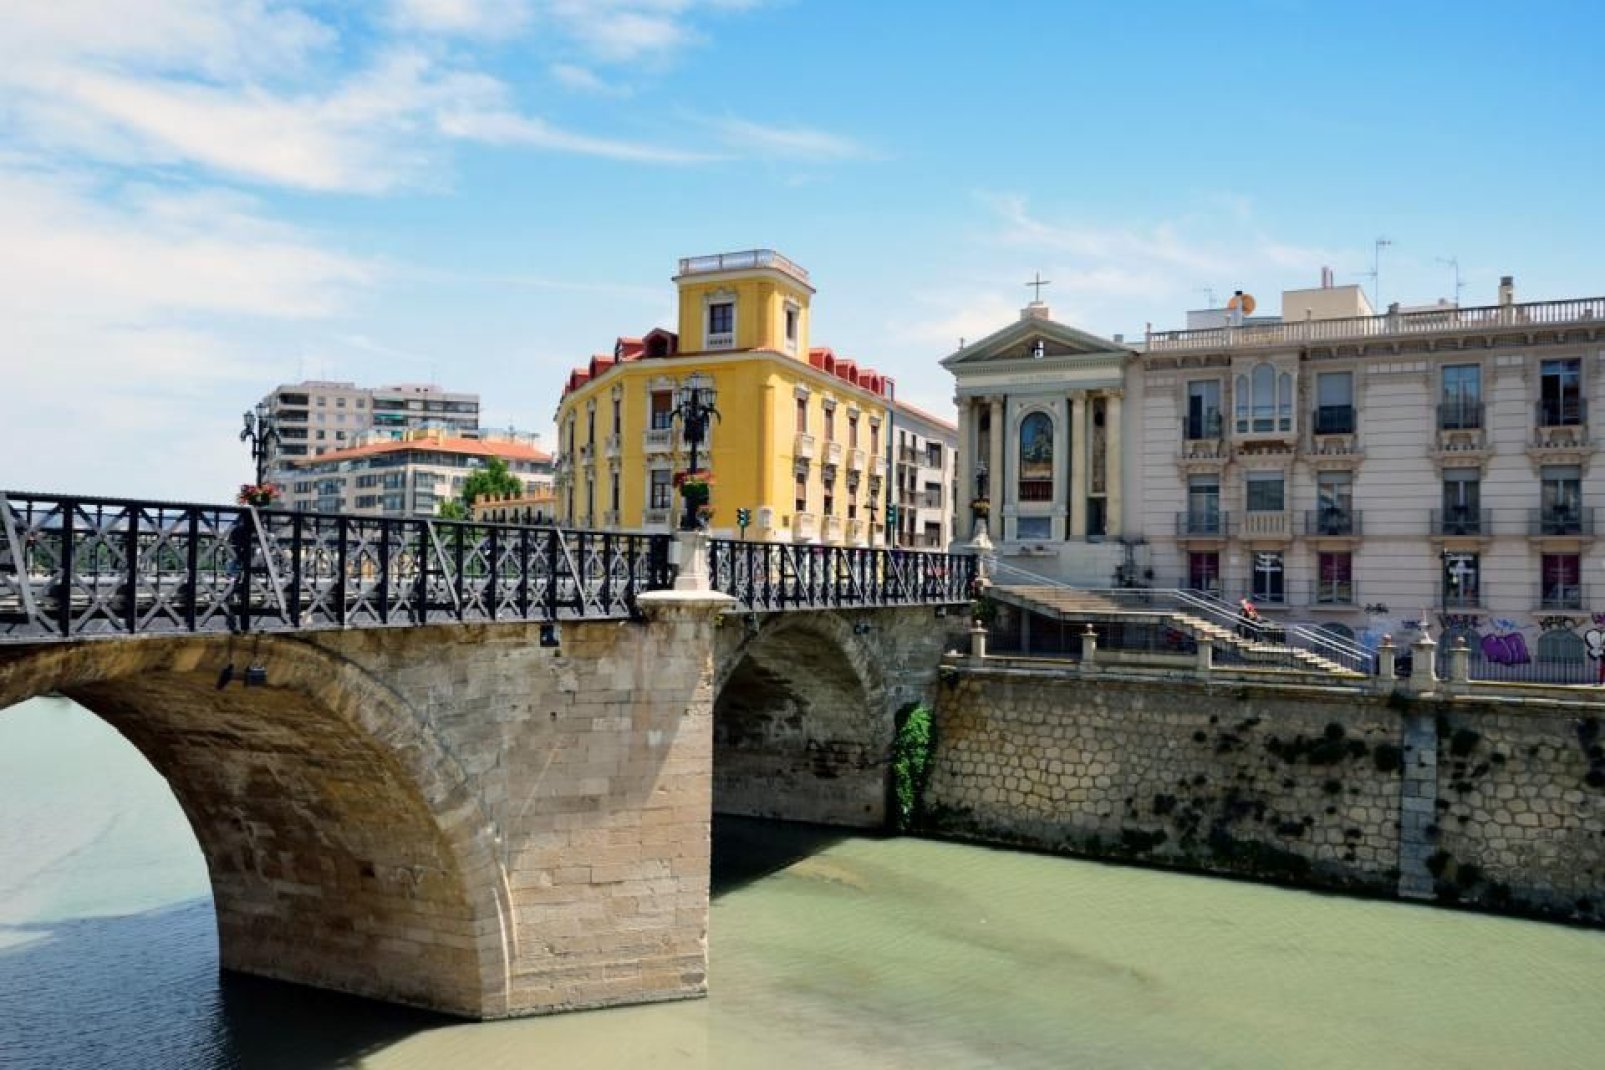 Le fleuve traverse la ville d'ouest en est, chevauché par plusieurs ponts de styles différents.